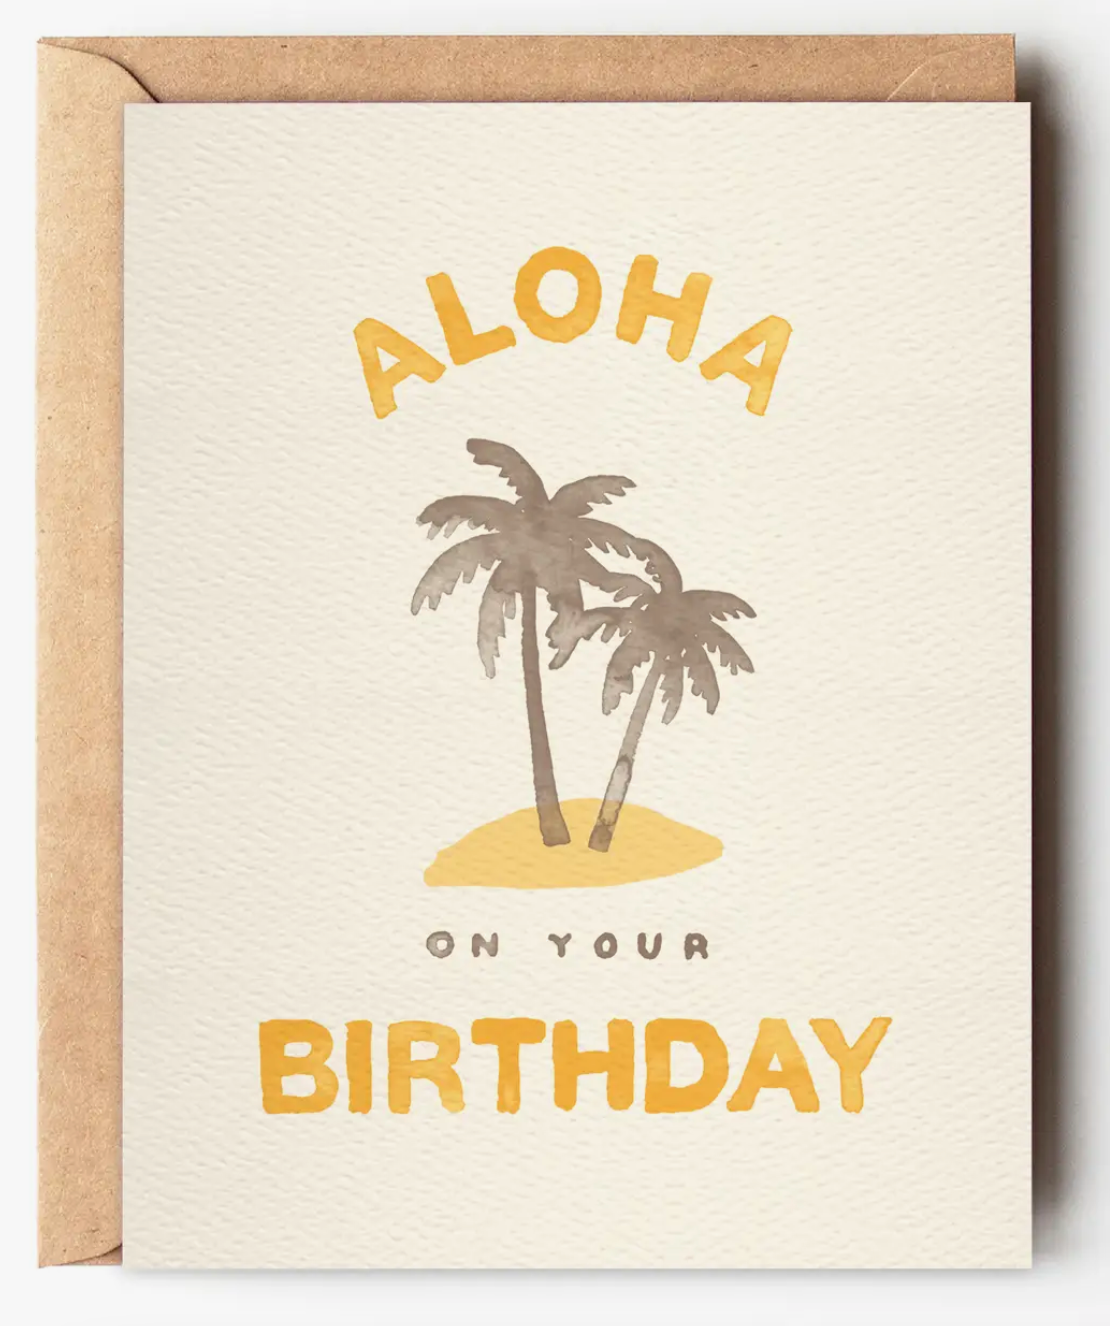 aloha on your birthday card